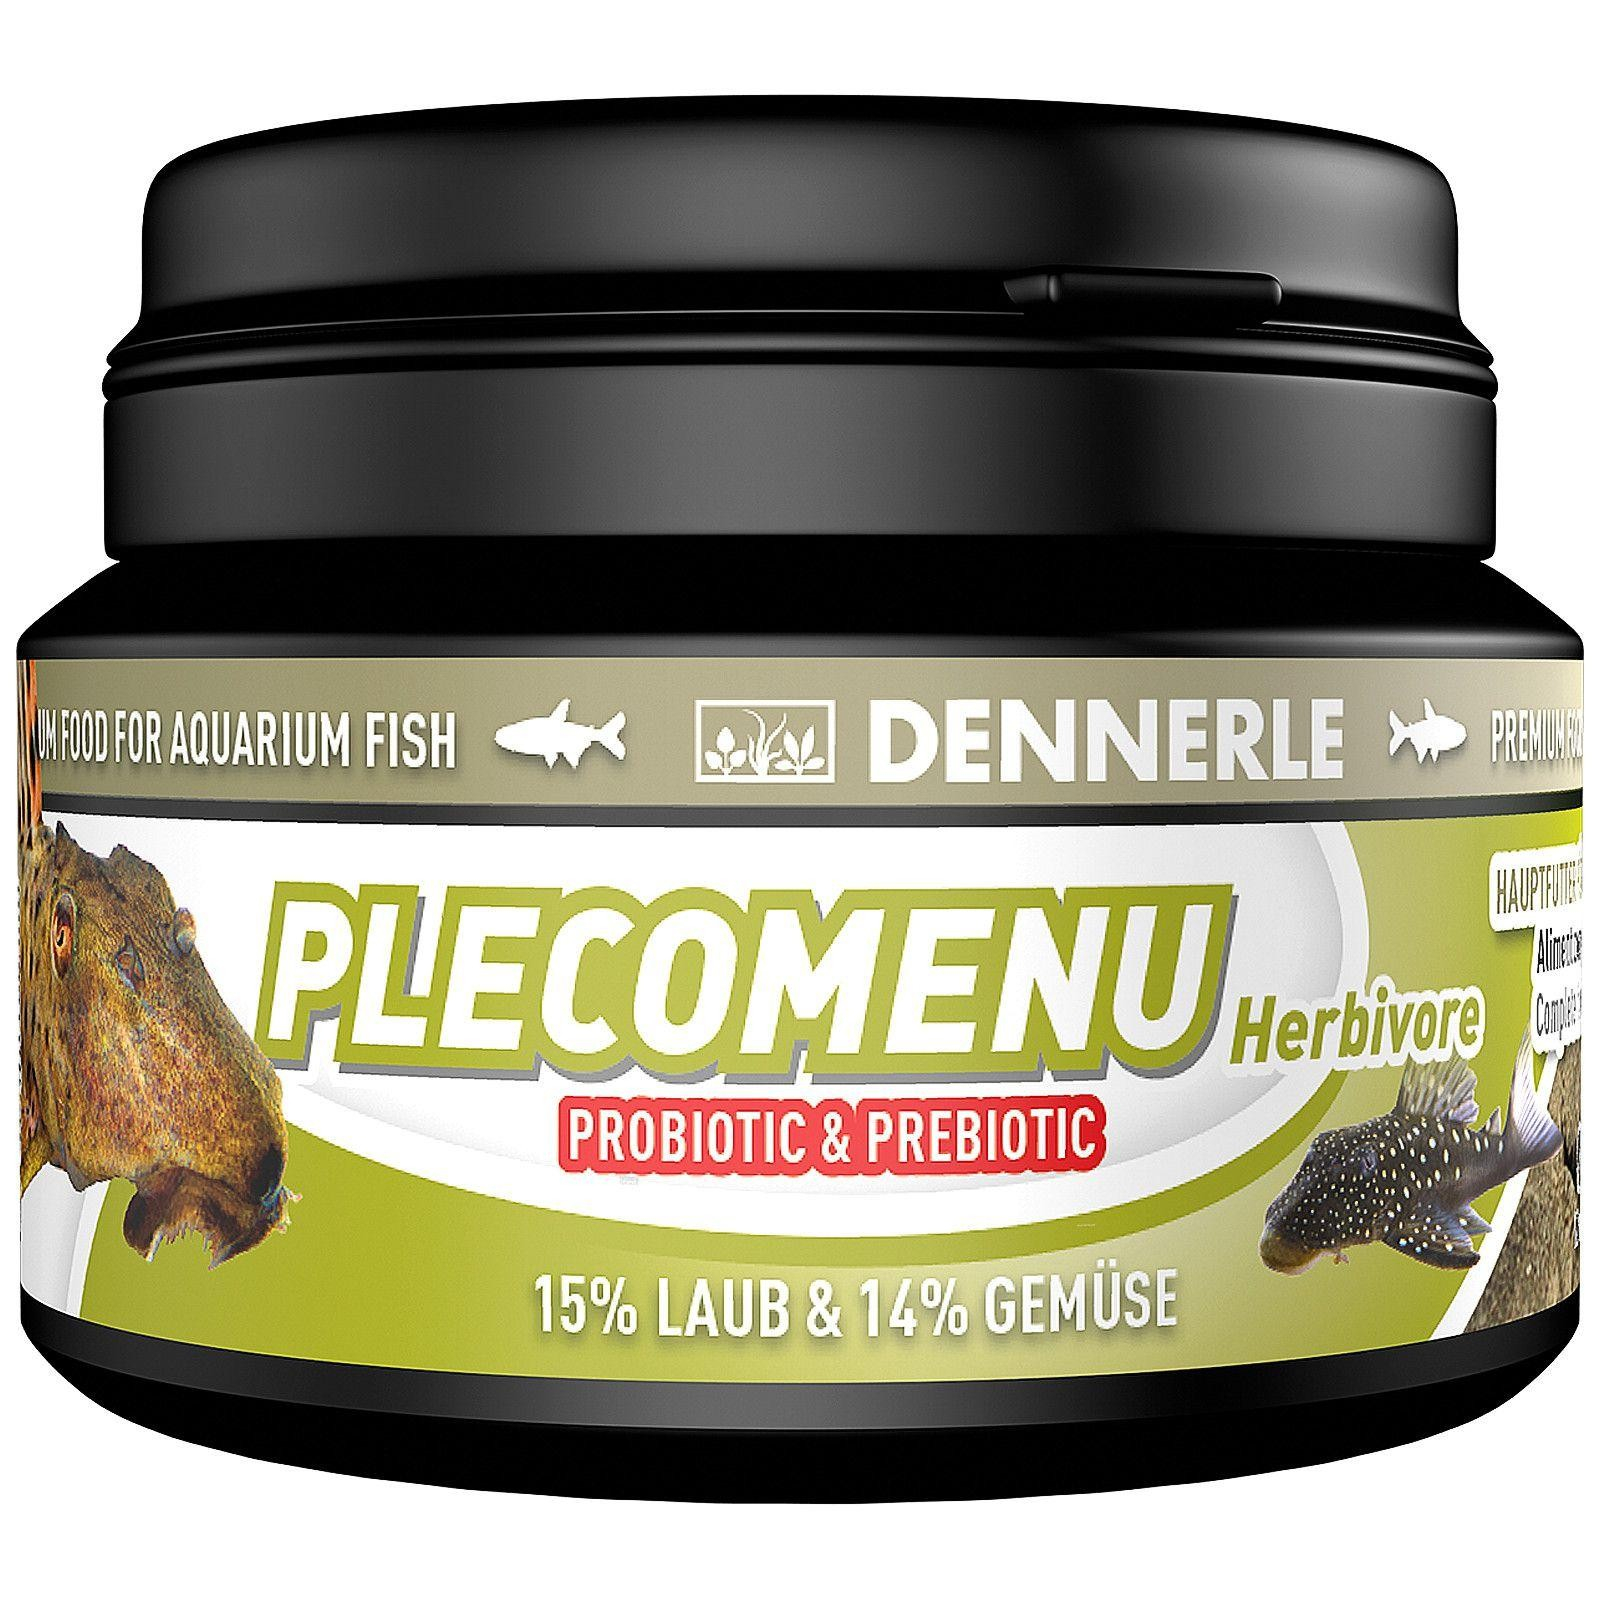 Alimento PlecoMenu herbívoro DENNERLE